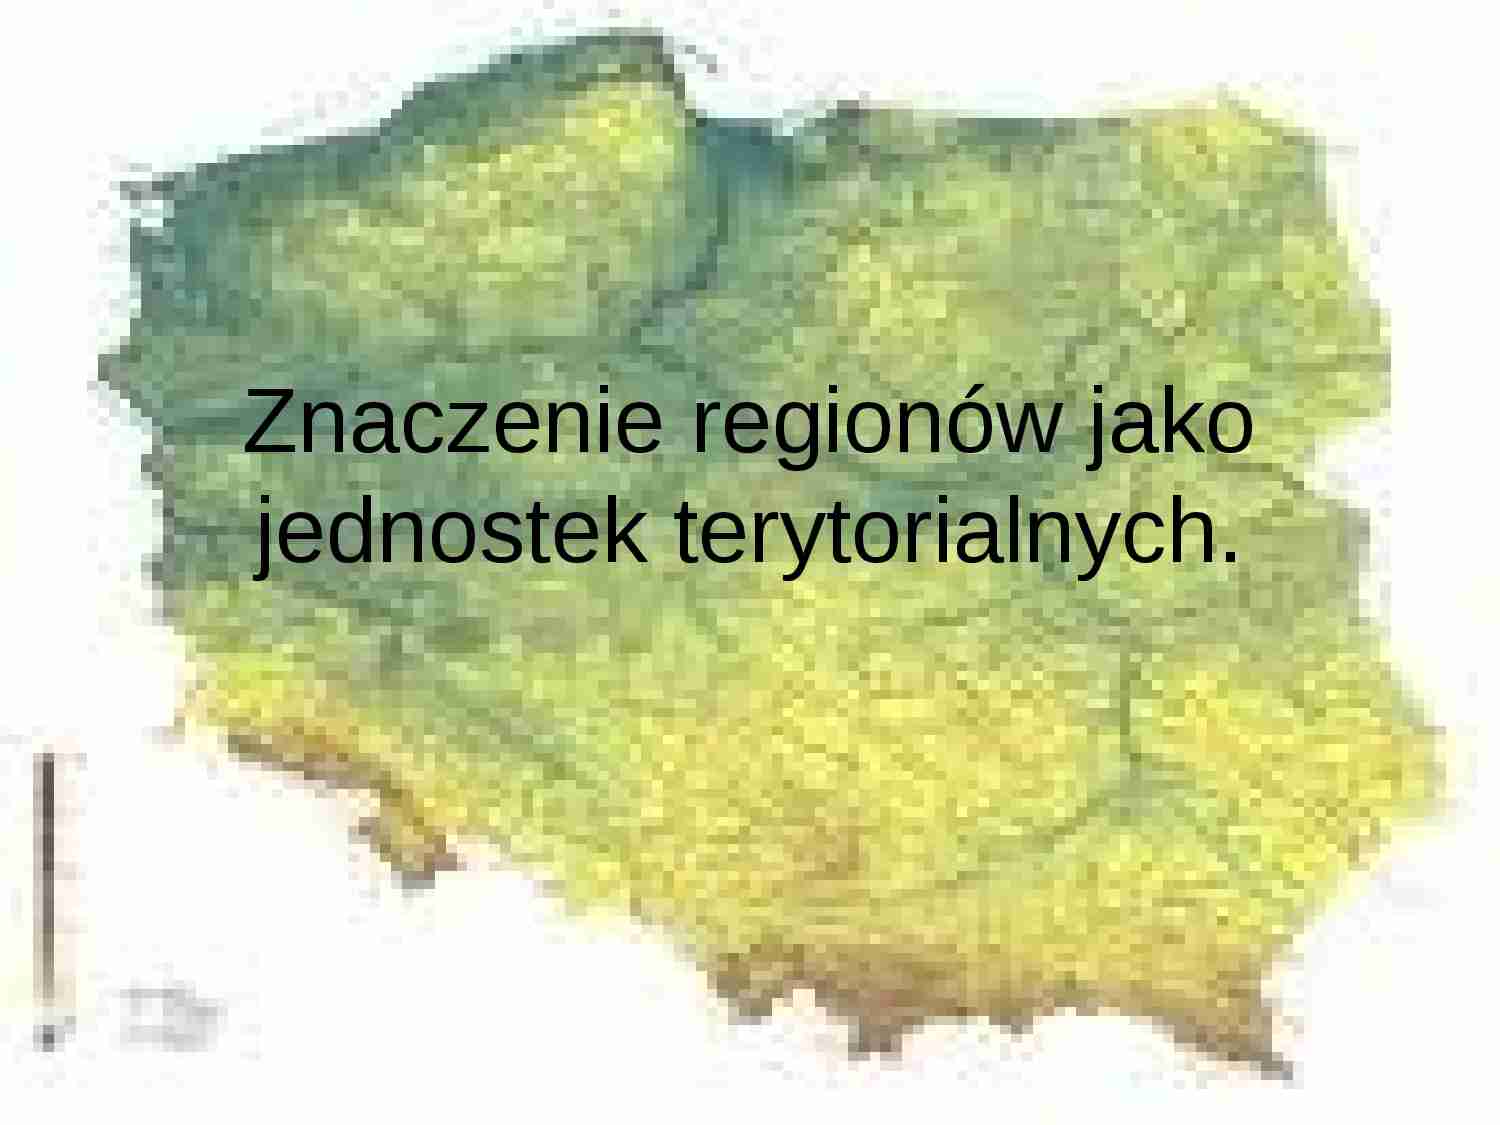 Znaczenie regionw jako jednostek terytorialnych - strona 1